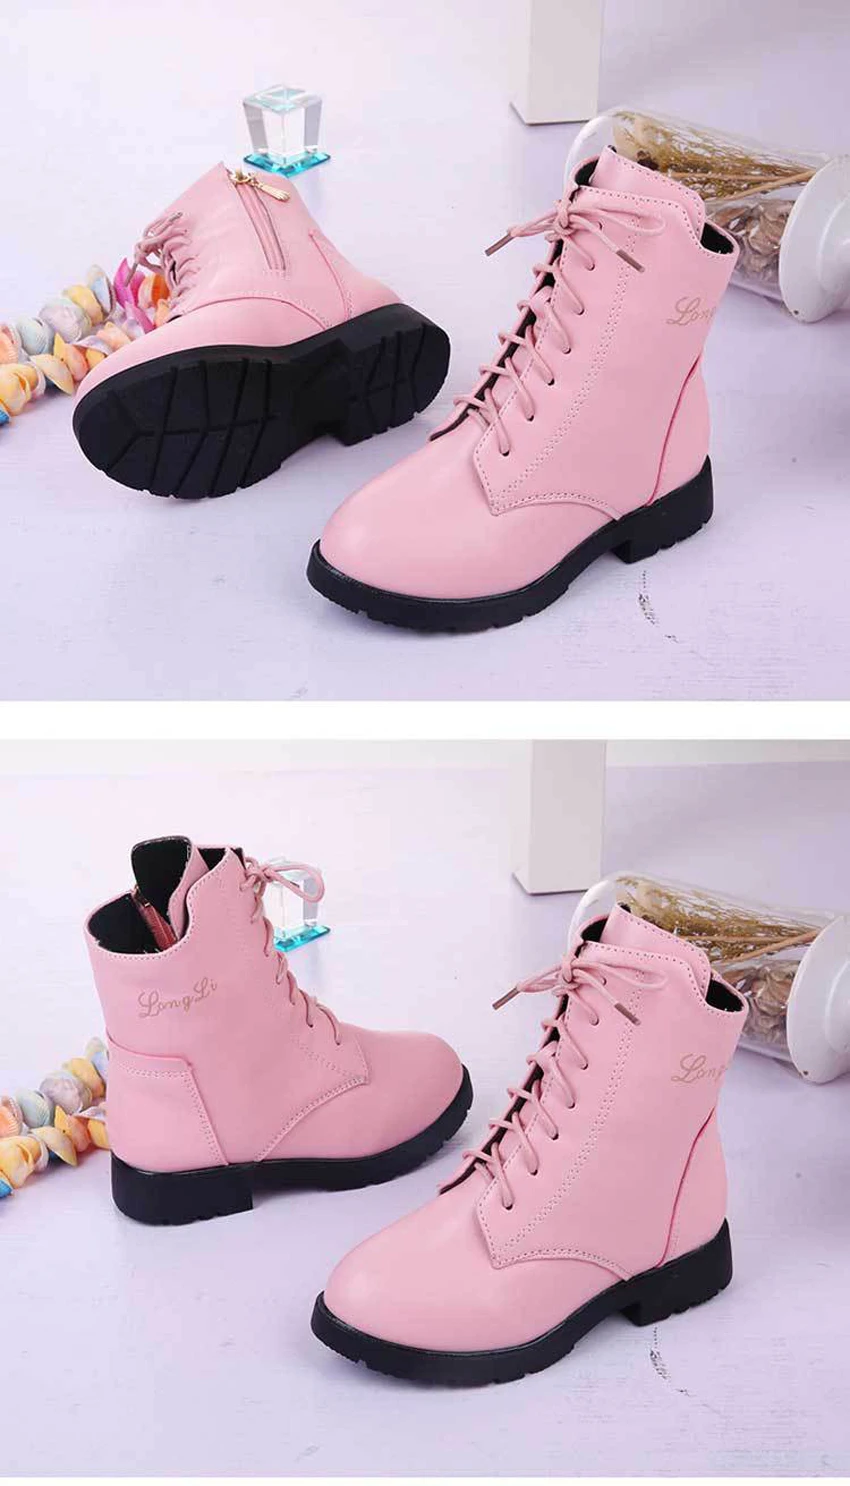 Зимние ботинки для девушки г. Новая модная детская обувь принцессы плюшевые зимние сапоги до середины икры для больших девочек детская кожаная обувь красный, розовый